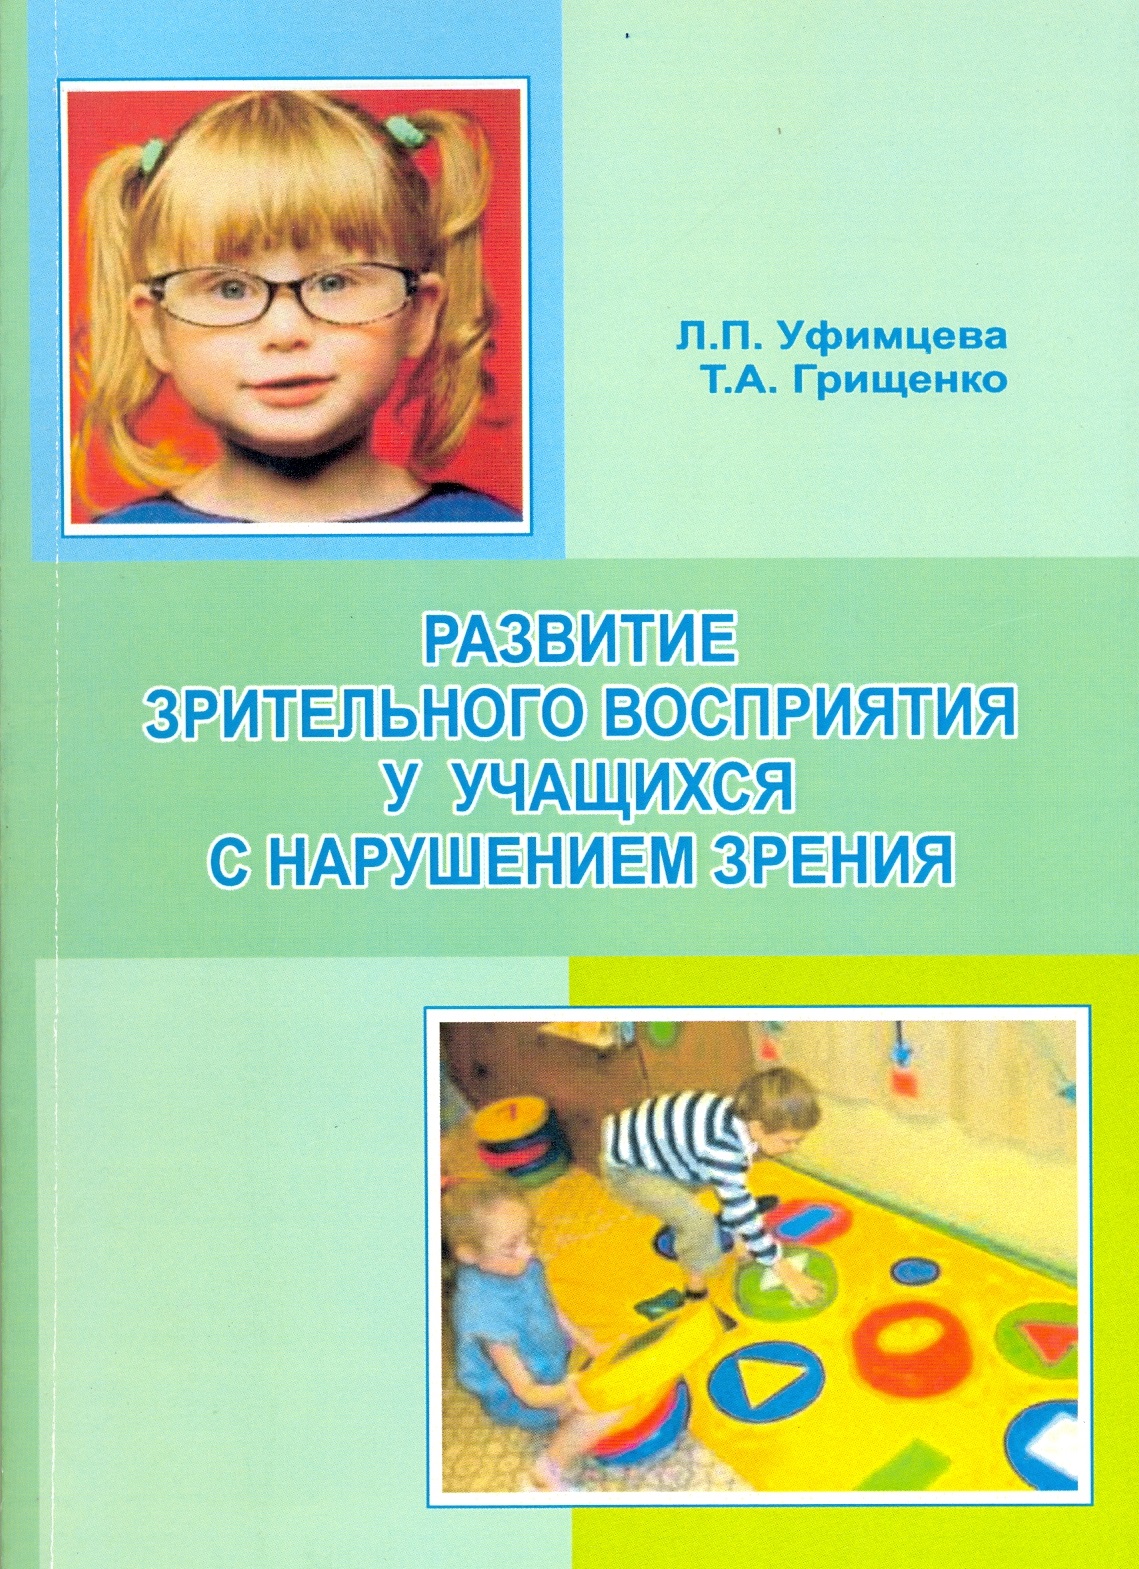 Дети с нарушением зрения пособие. Пособия для детей с нарушением зрения. Учебники для детей с нарушением зрения. Книги для детей с нарушением зрения дошкольников. Дошкольники с нарушением зрения.